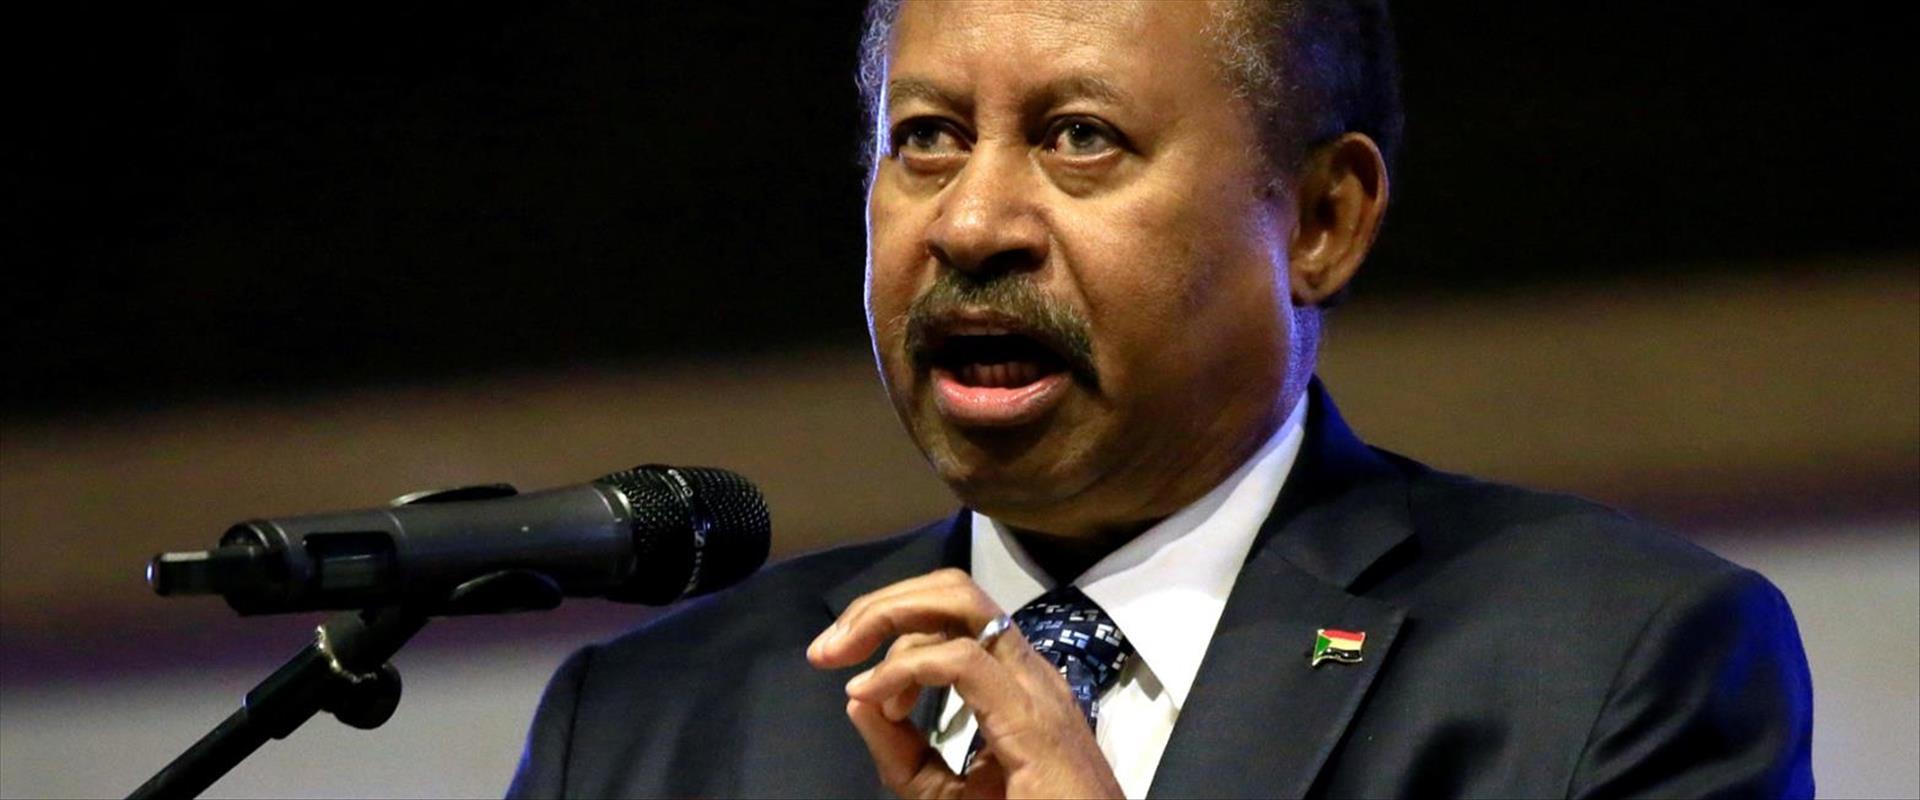 رئيس الحكومة السودانية عبد الله حمدوك